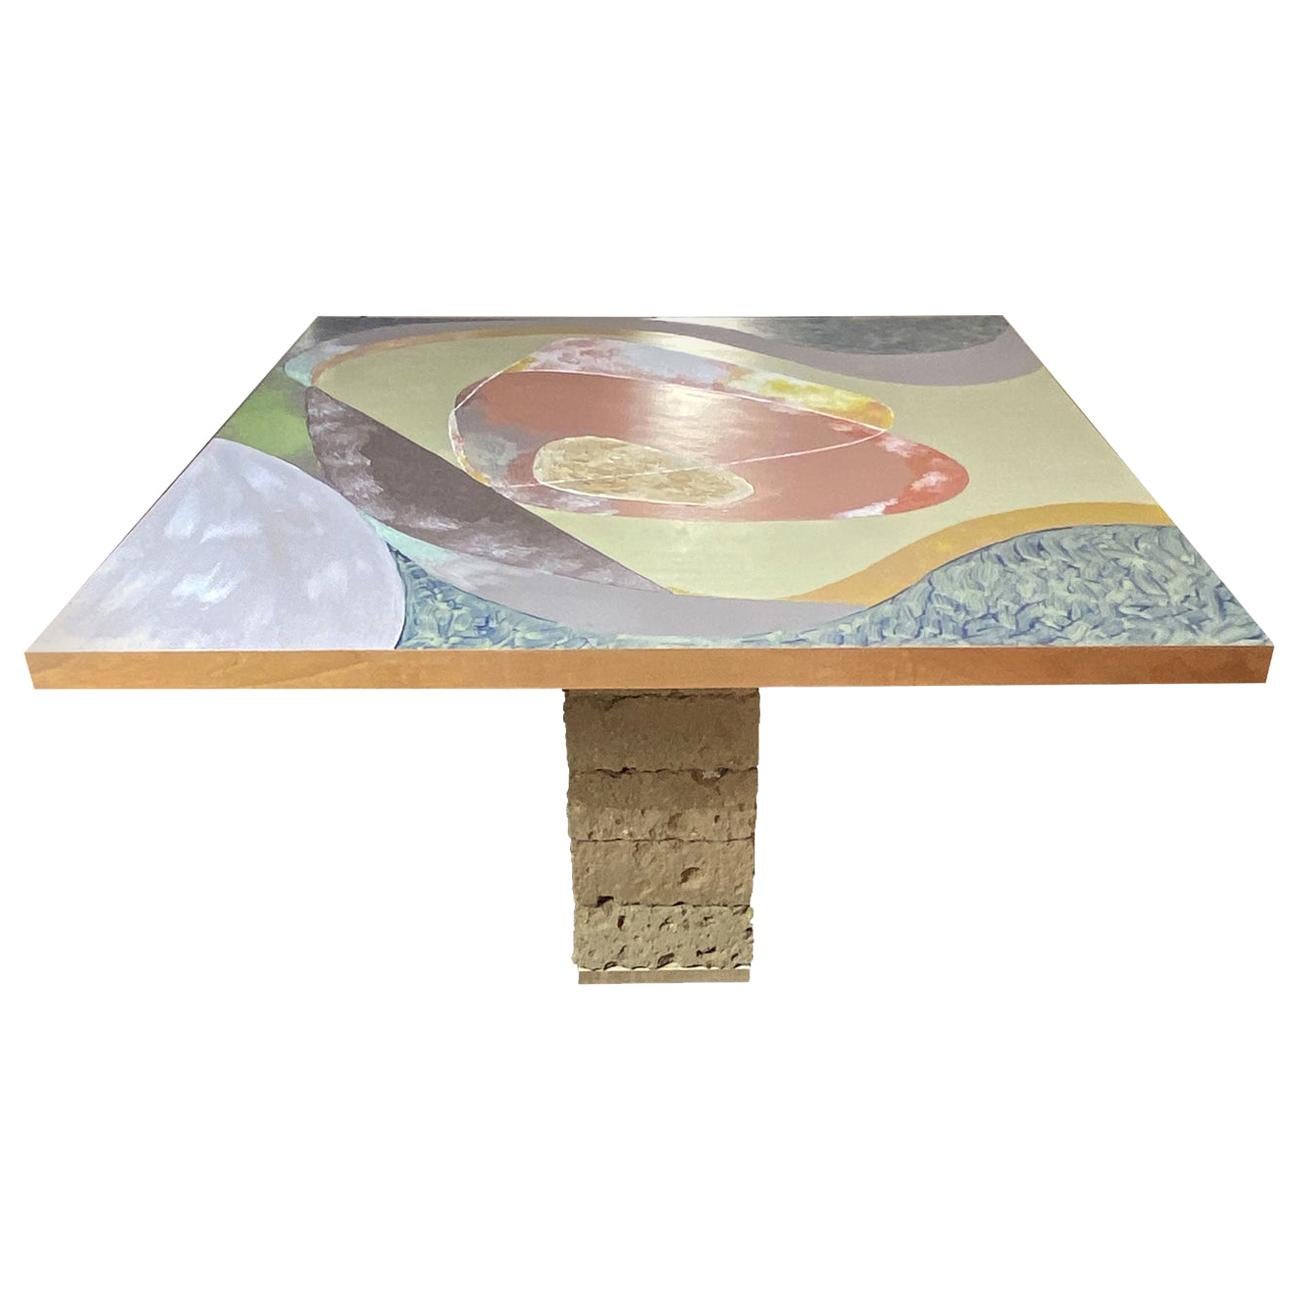 Leonardo Table by Mascia Meccani